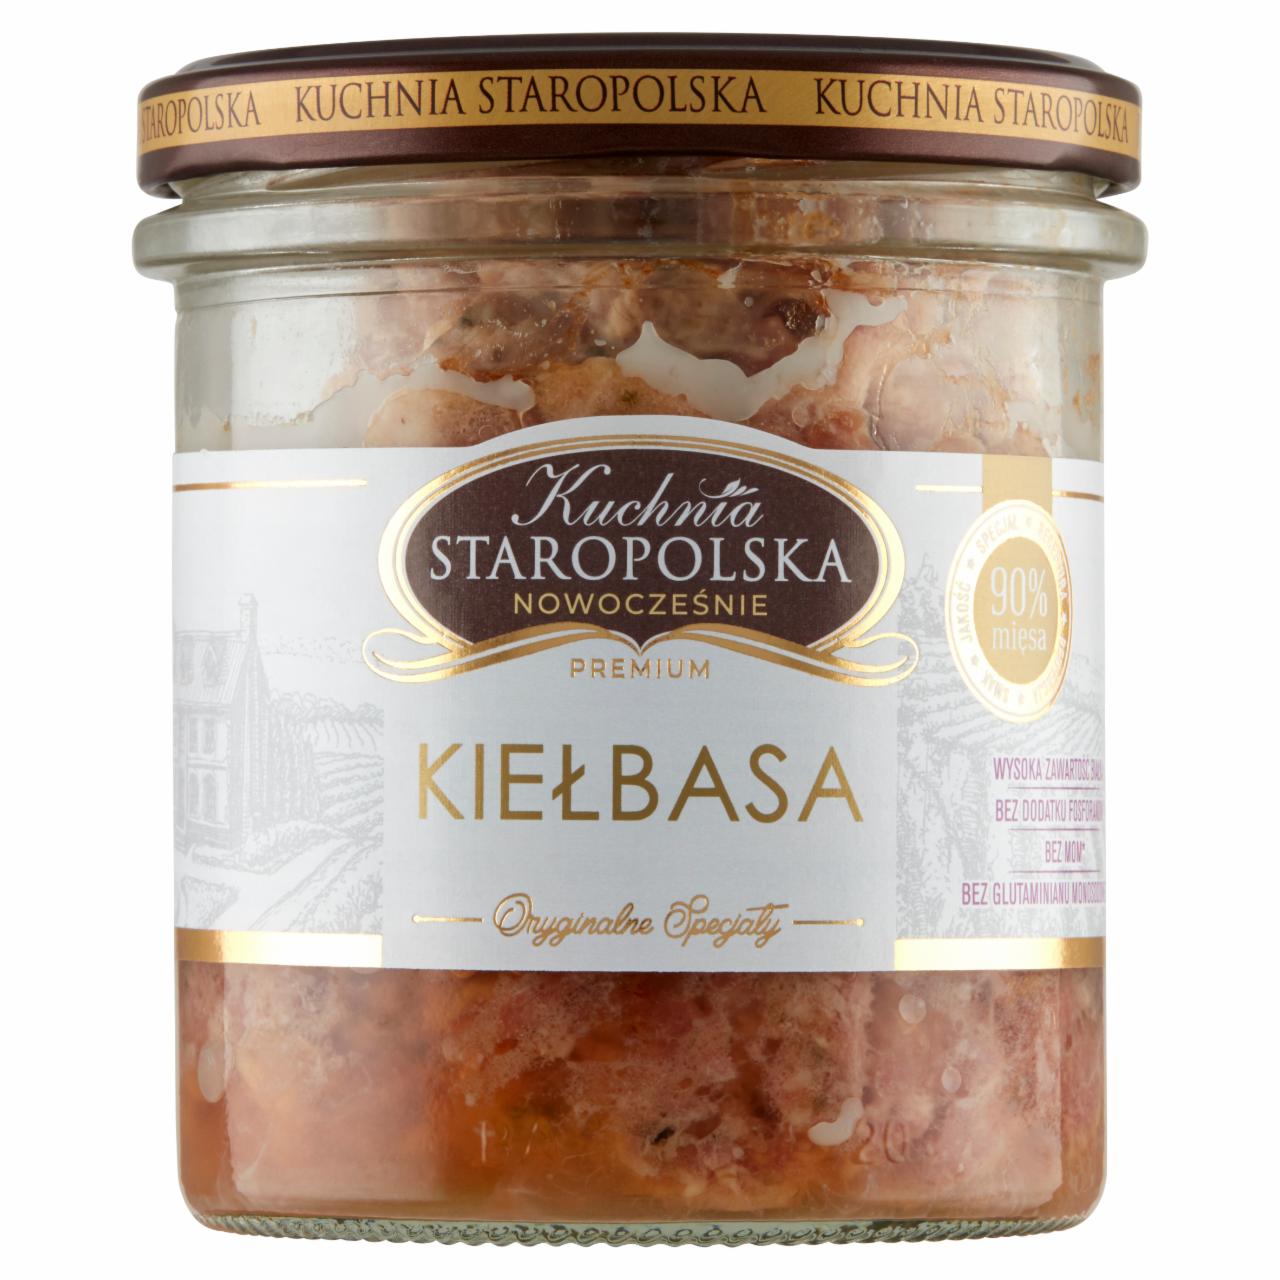 Zdjęcia - Kuchnia Staropolska Premium Kiełbasa 300 g